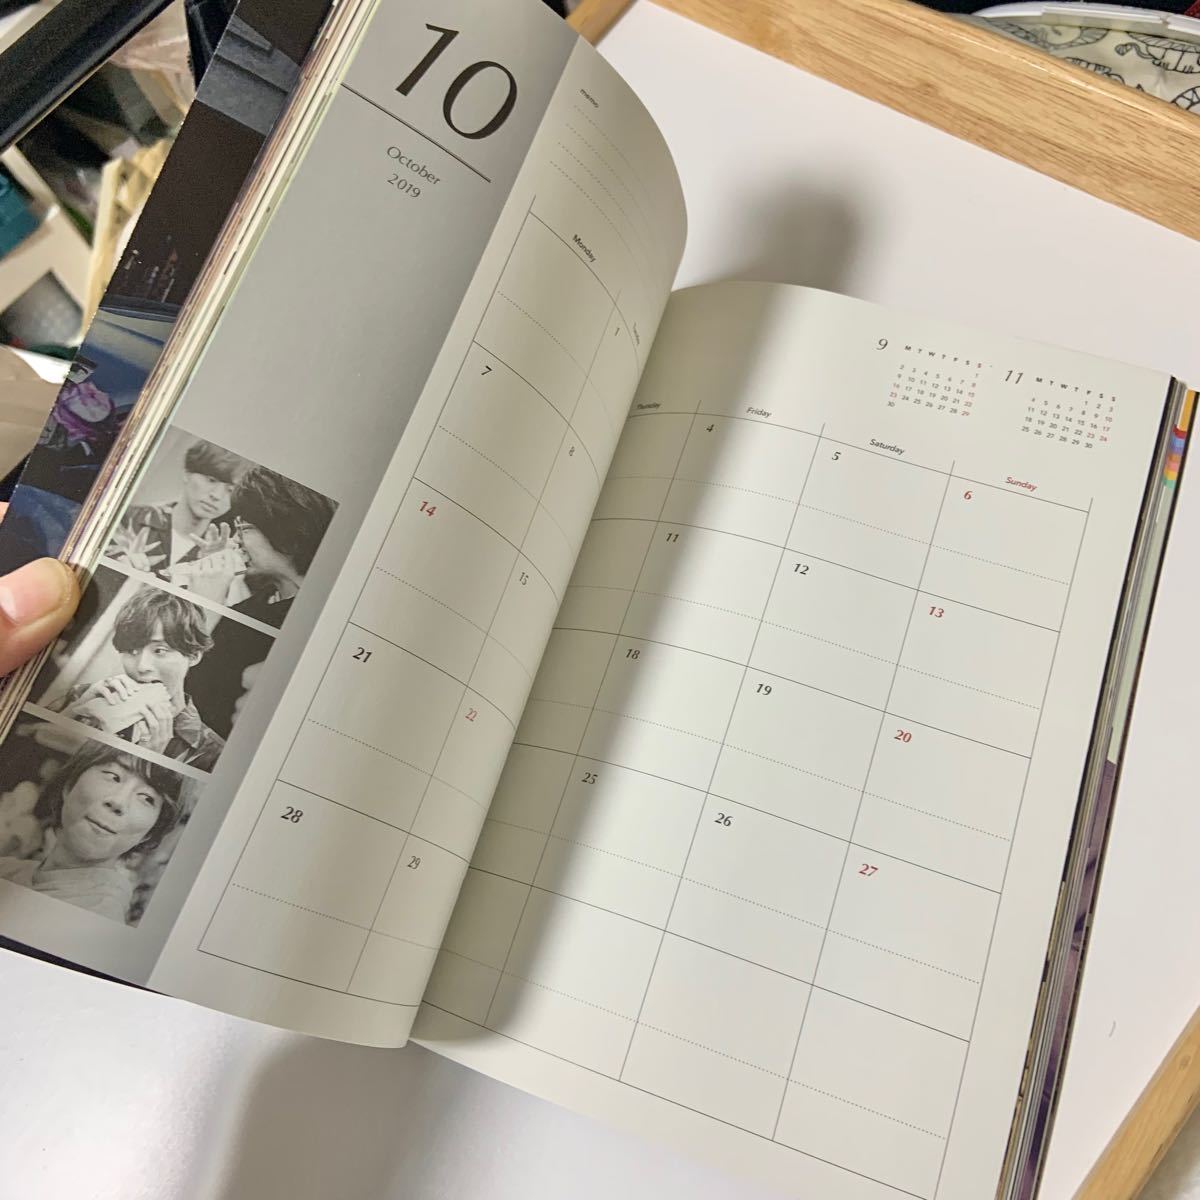 Kis-My-Ft2 カレンダー 公式 2019~2020 キスマイ 写真集